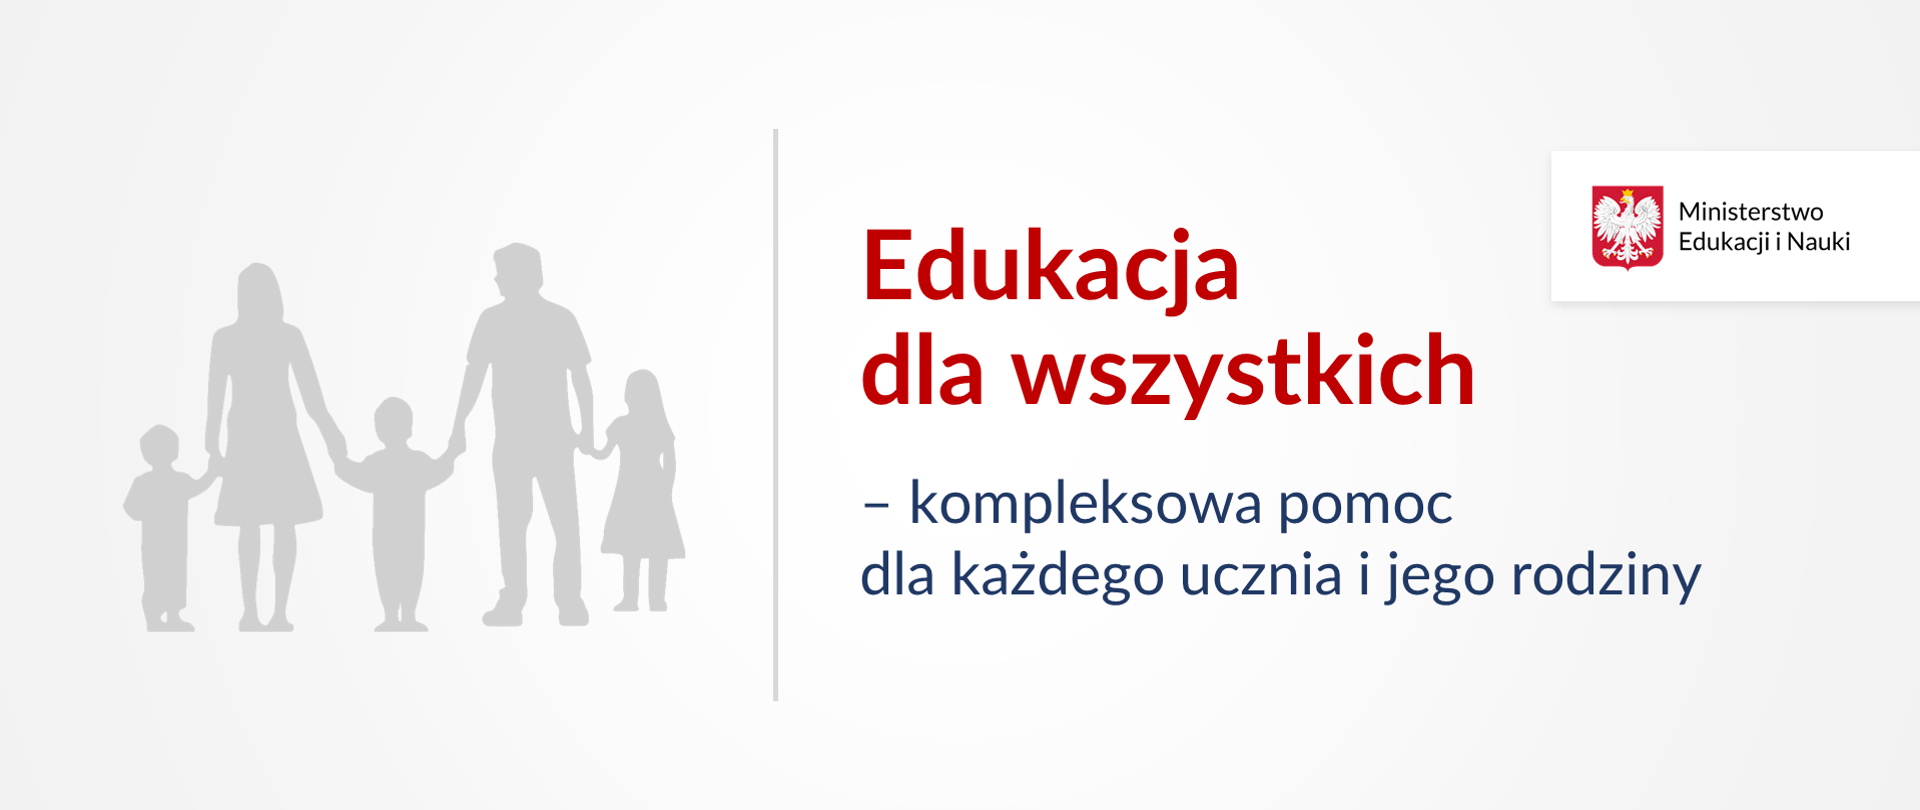 Grafika z ikoną wielodzietnej rodziny i tekstem: "Edukacja dla wszystkich – kompleksowa pomoc dla każdego dziecka, ucznia i jego rodziny"